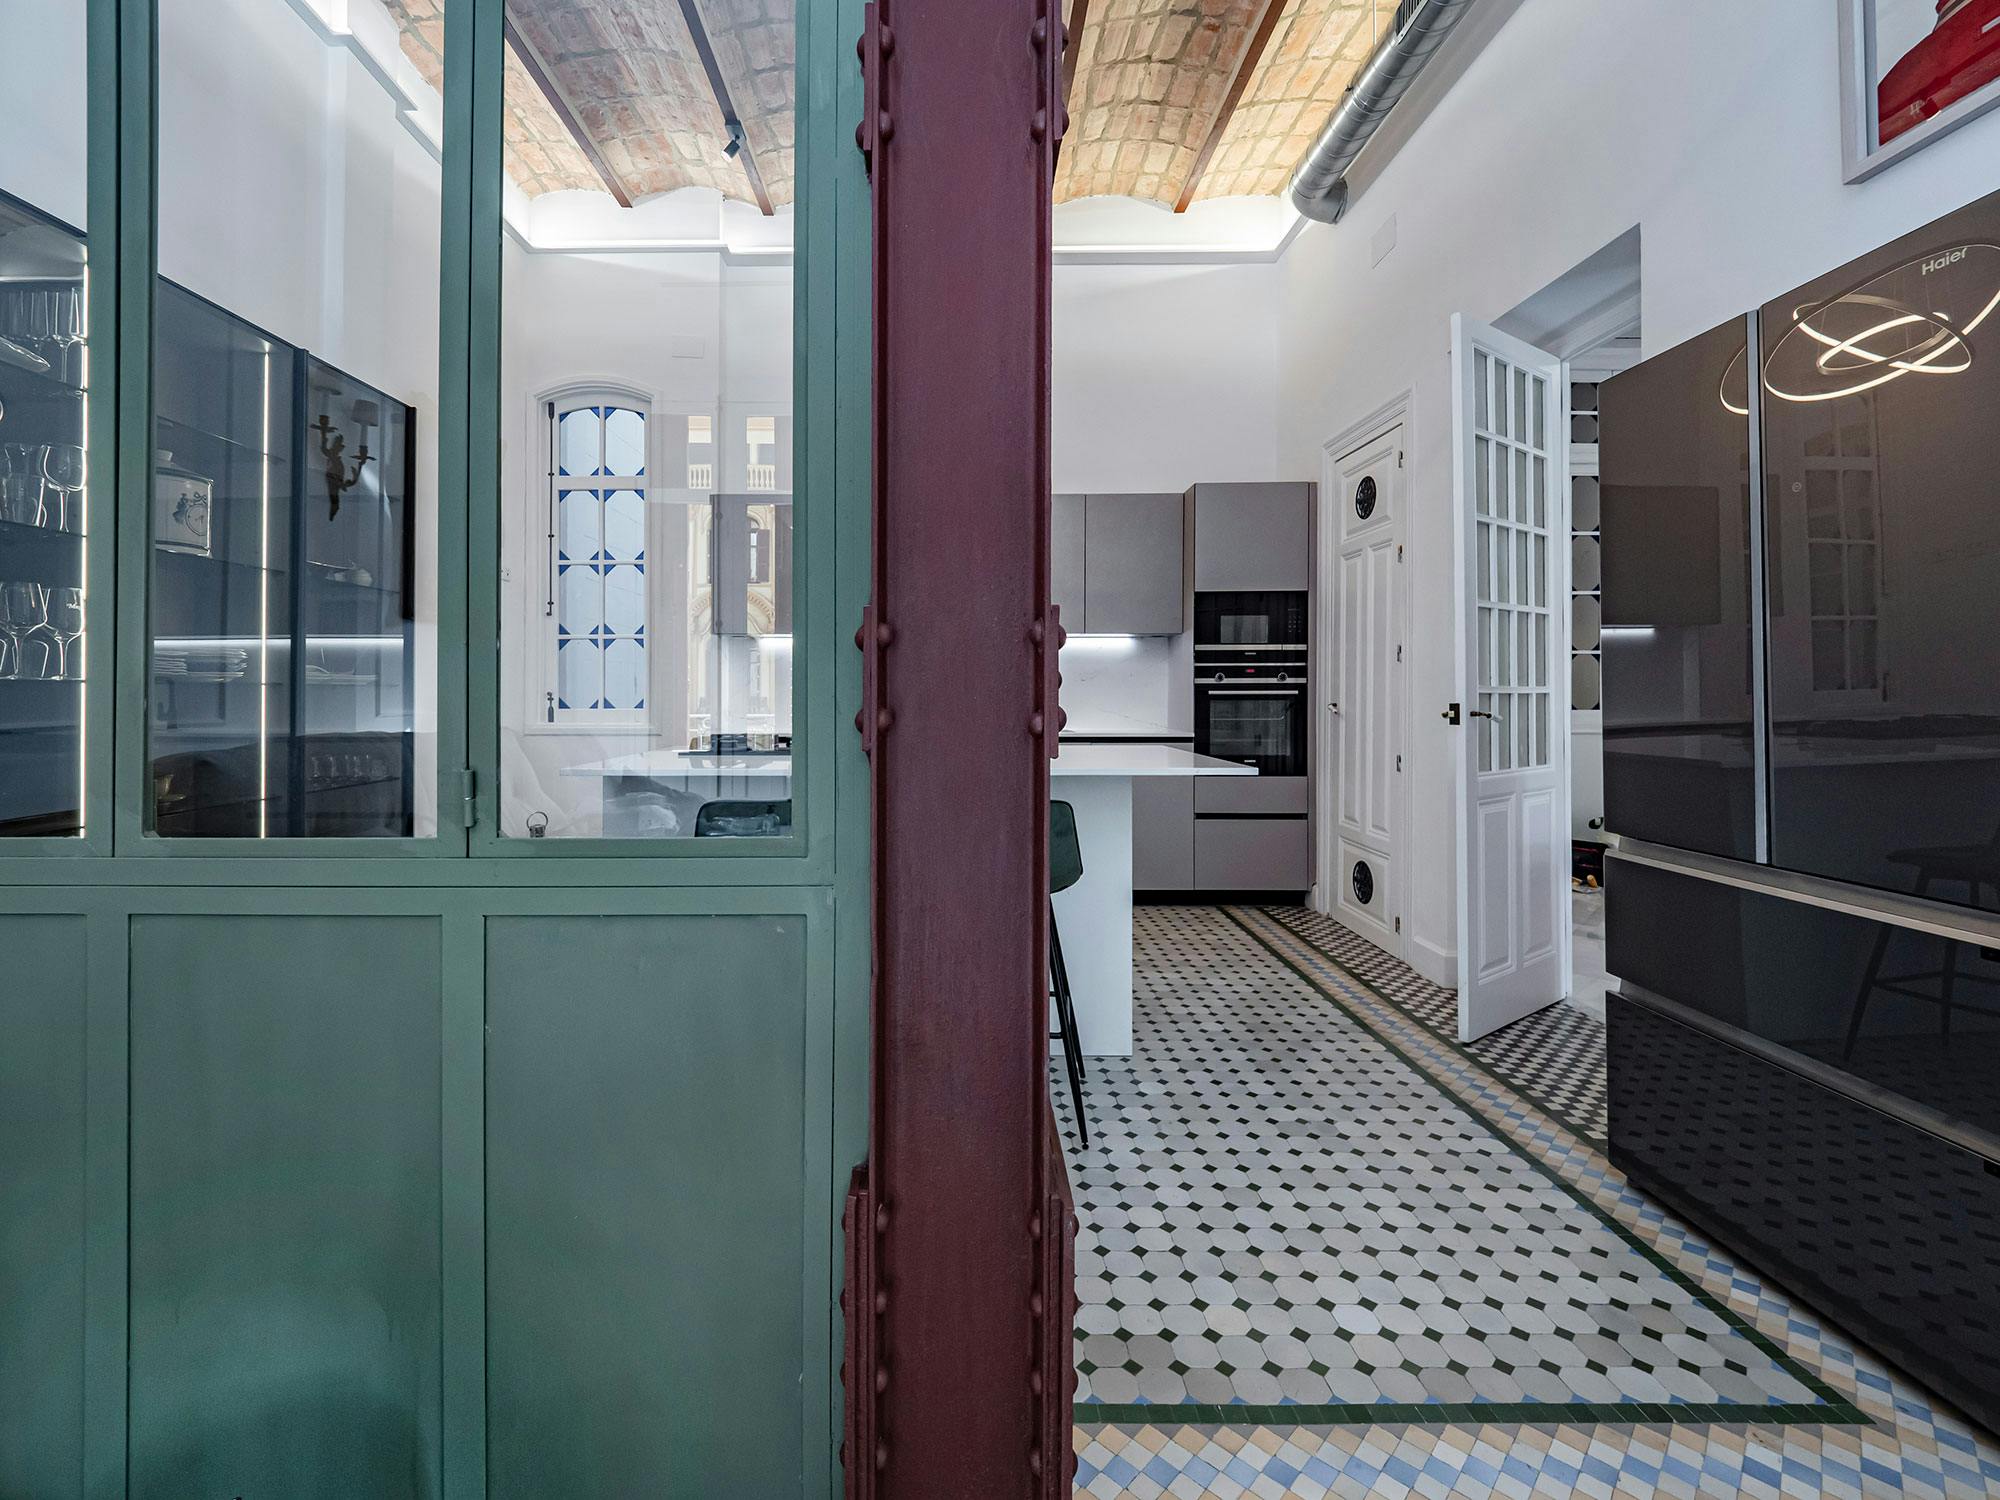 Numéro d'image 34 de la section actuelle de A bathroom blending in with the historic building’s past de Cosentino France